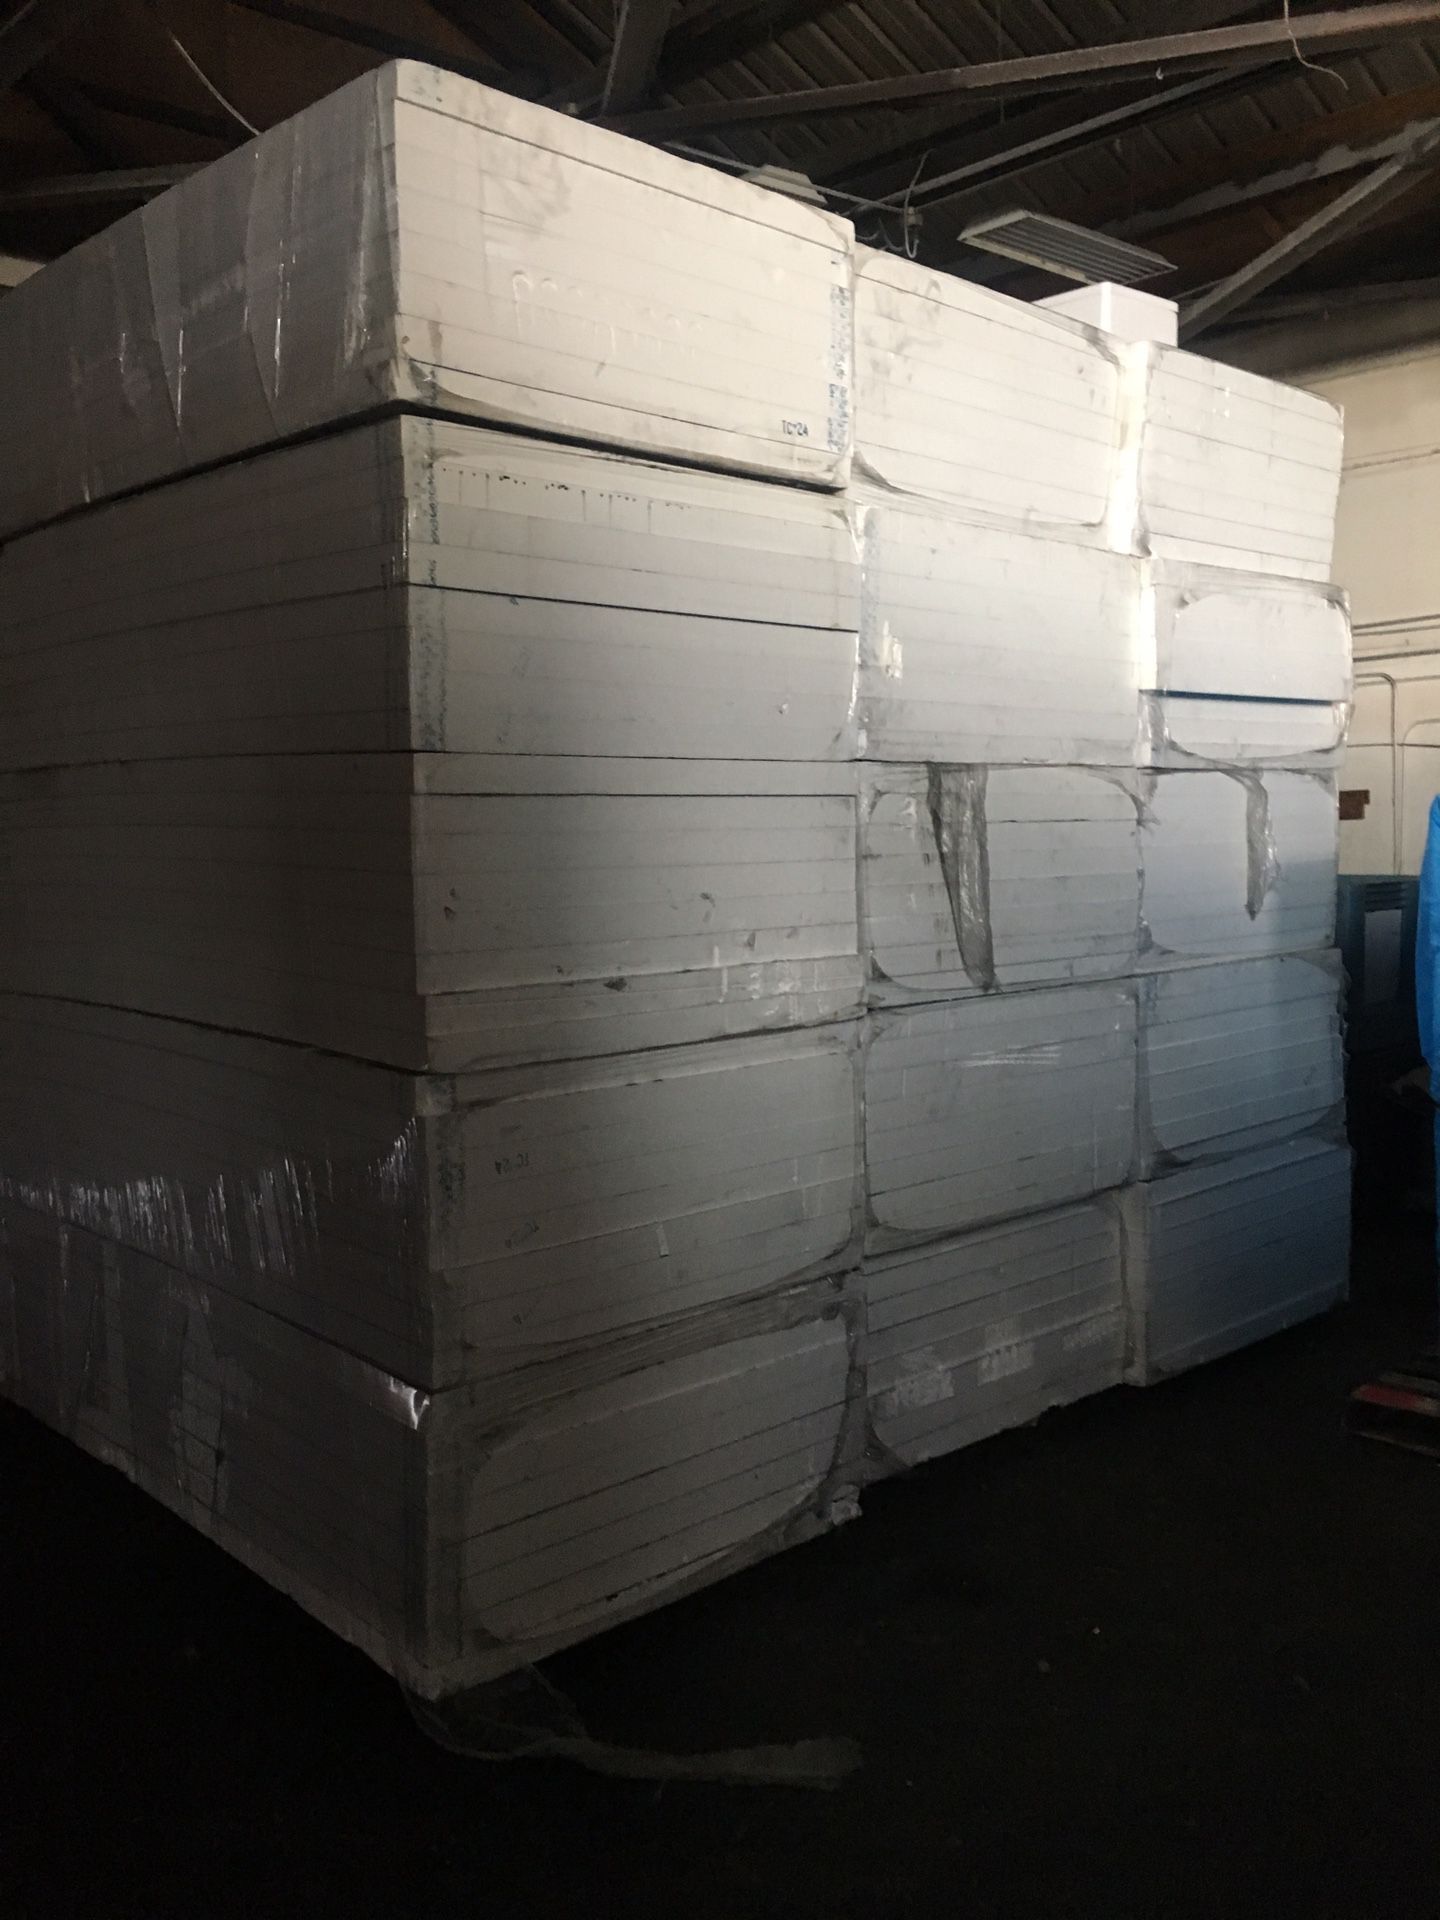 Insulfoam foam board insulation (new)